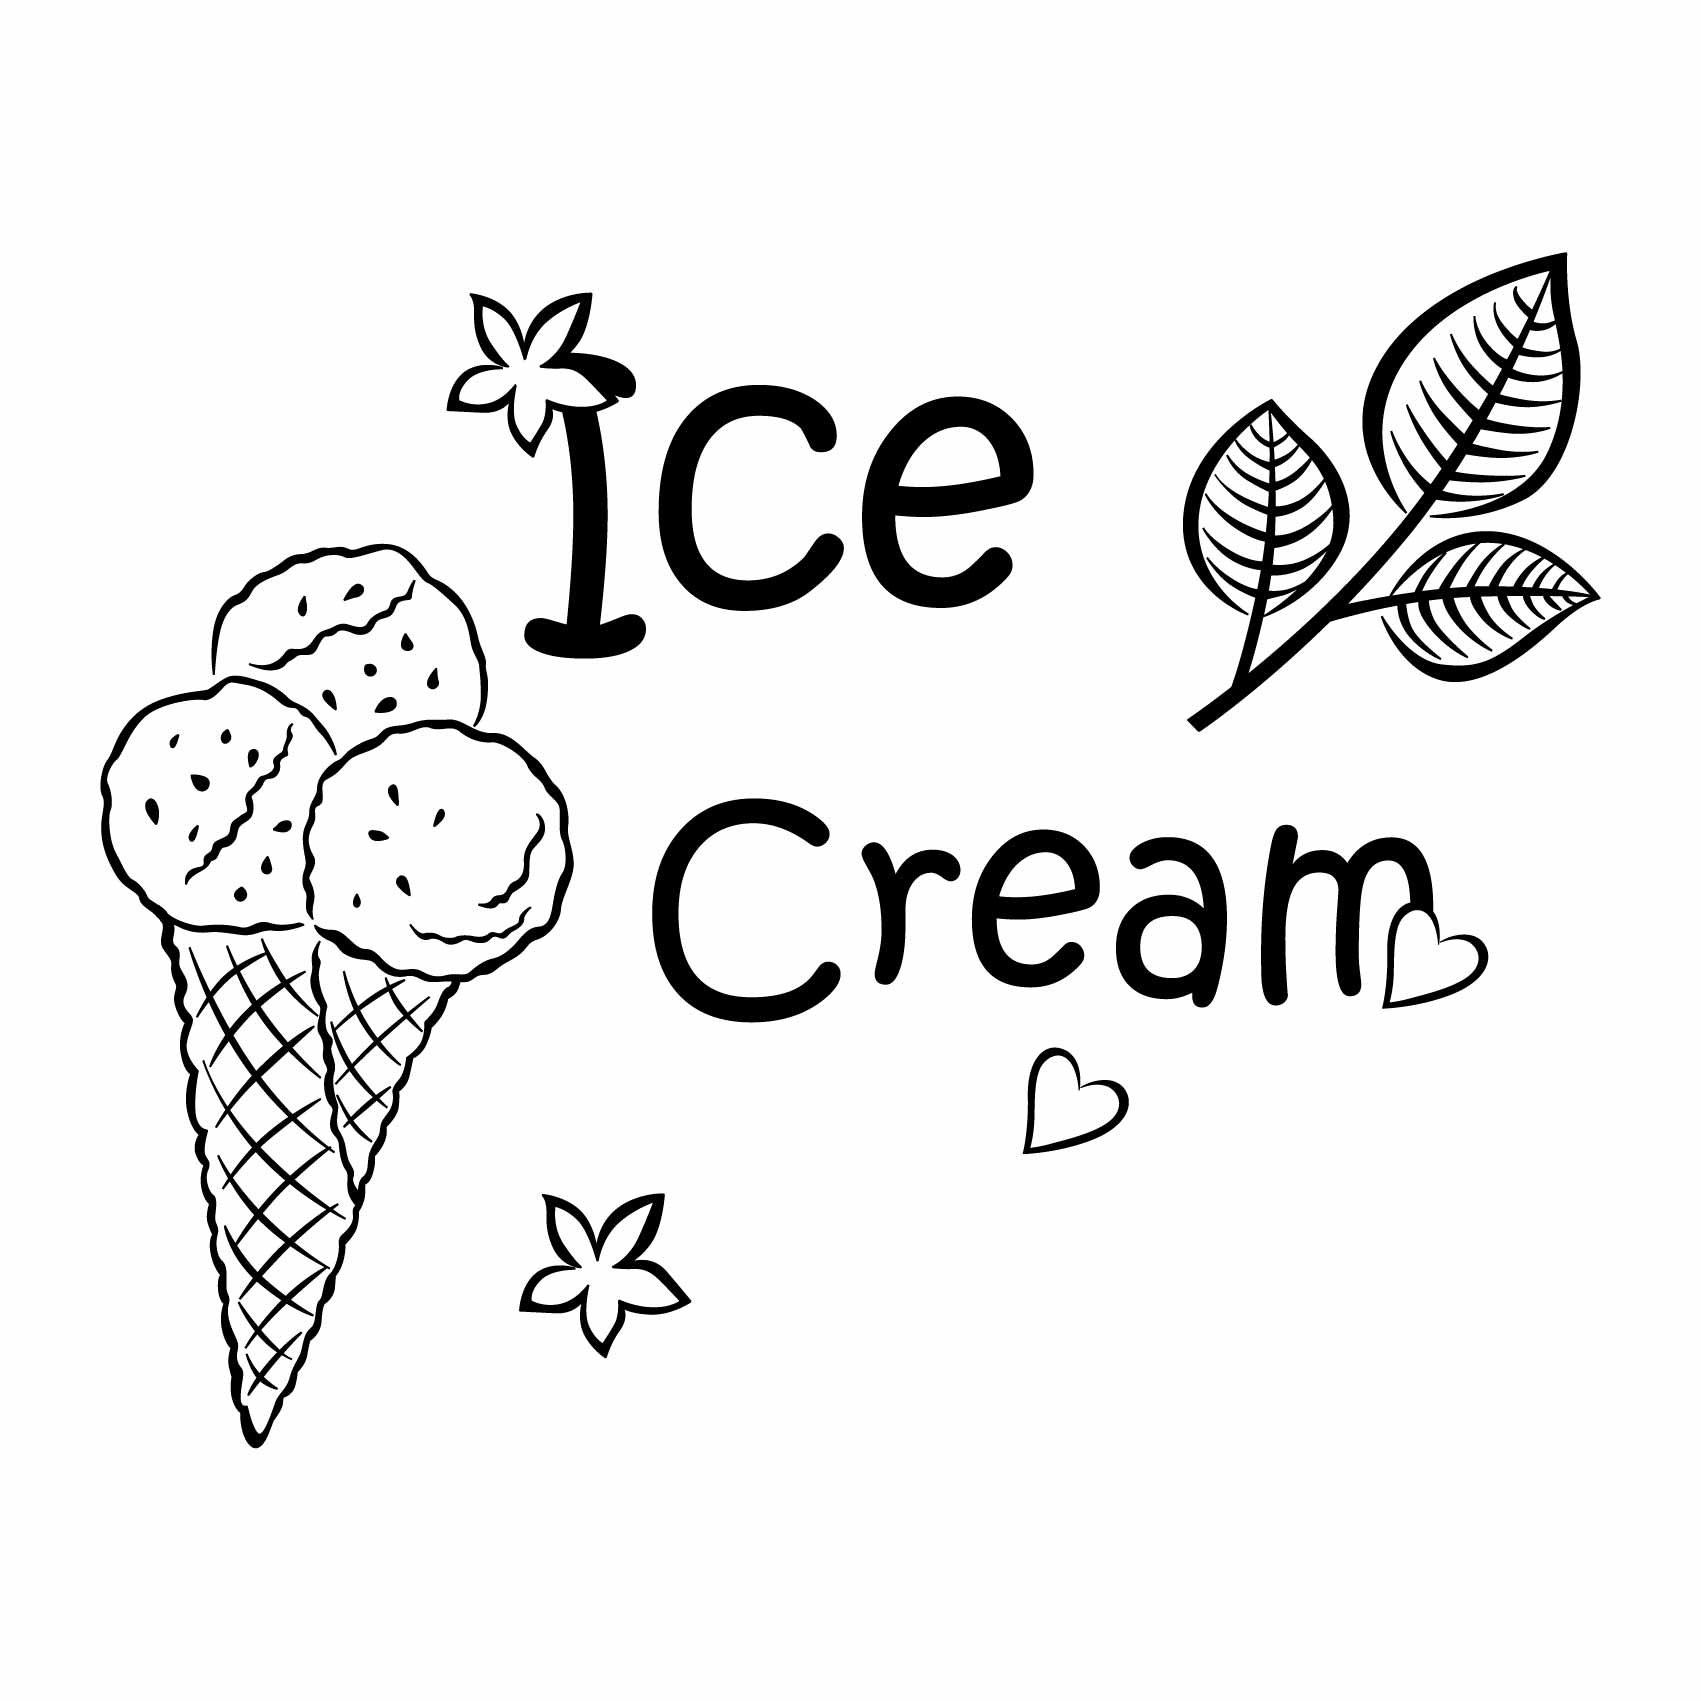 stickers-frigo-glace-ice-cream-ref7frigo-autocollant-refrigerateur-stickers-pour-frigo-cuisine-frigidaire-combiné-congelateur-americain-decoration-(2)